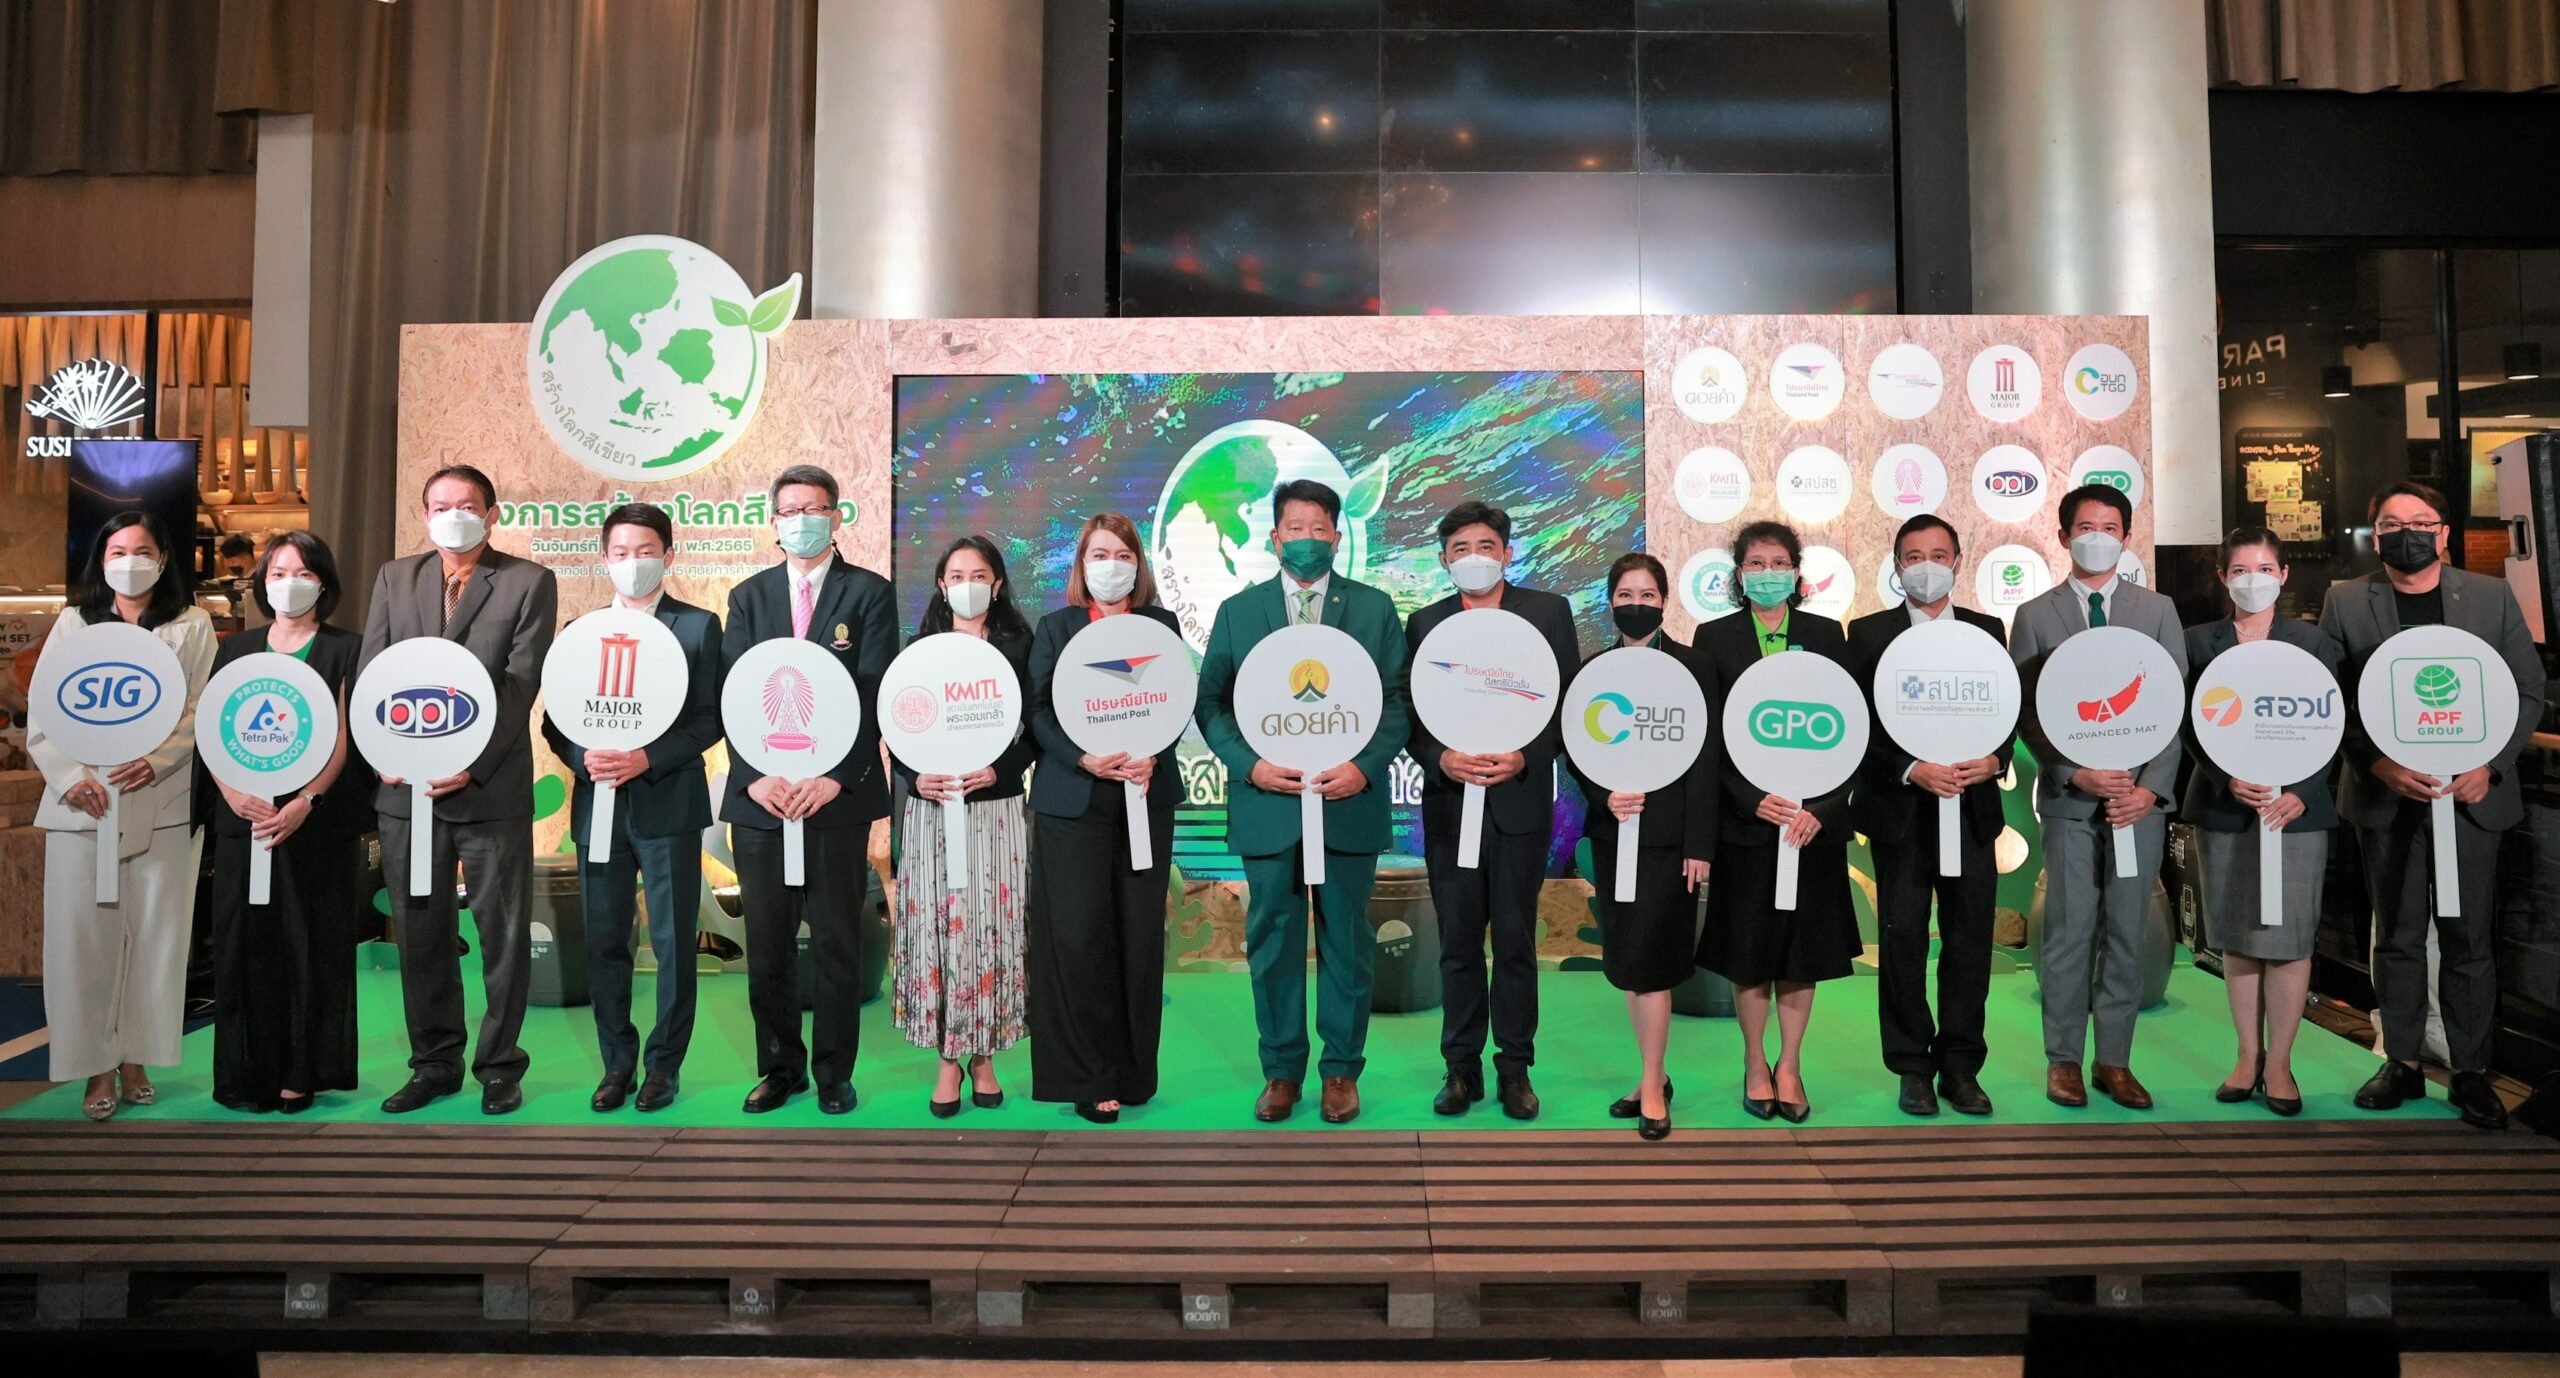 ดอยคำ จับมือ 14 องค์กรปั้นโครงการ “สร้างโลกสีเขียว” ผลักดันการบริหารจัดการขยะที่ถูกต้อง สร้างความยั่งยืนในสังคมไทย